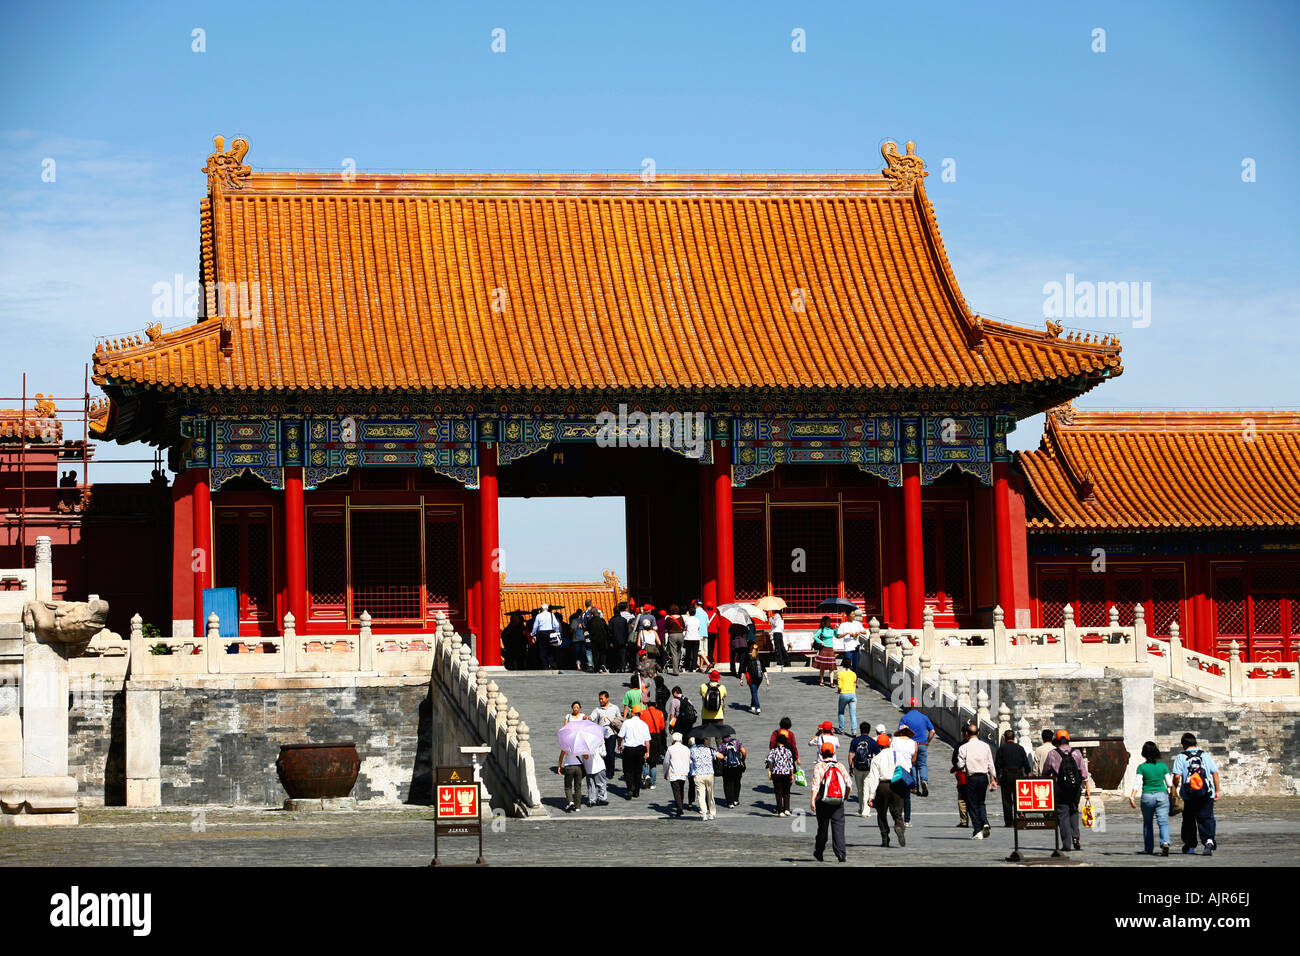 Les gens à la Forbidden City Beijing Chine Banque D'Images